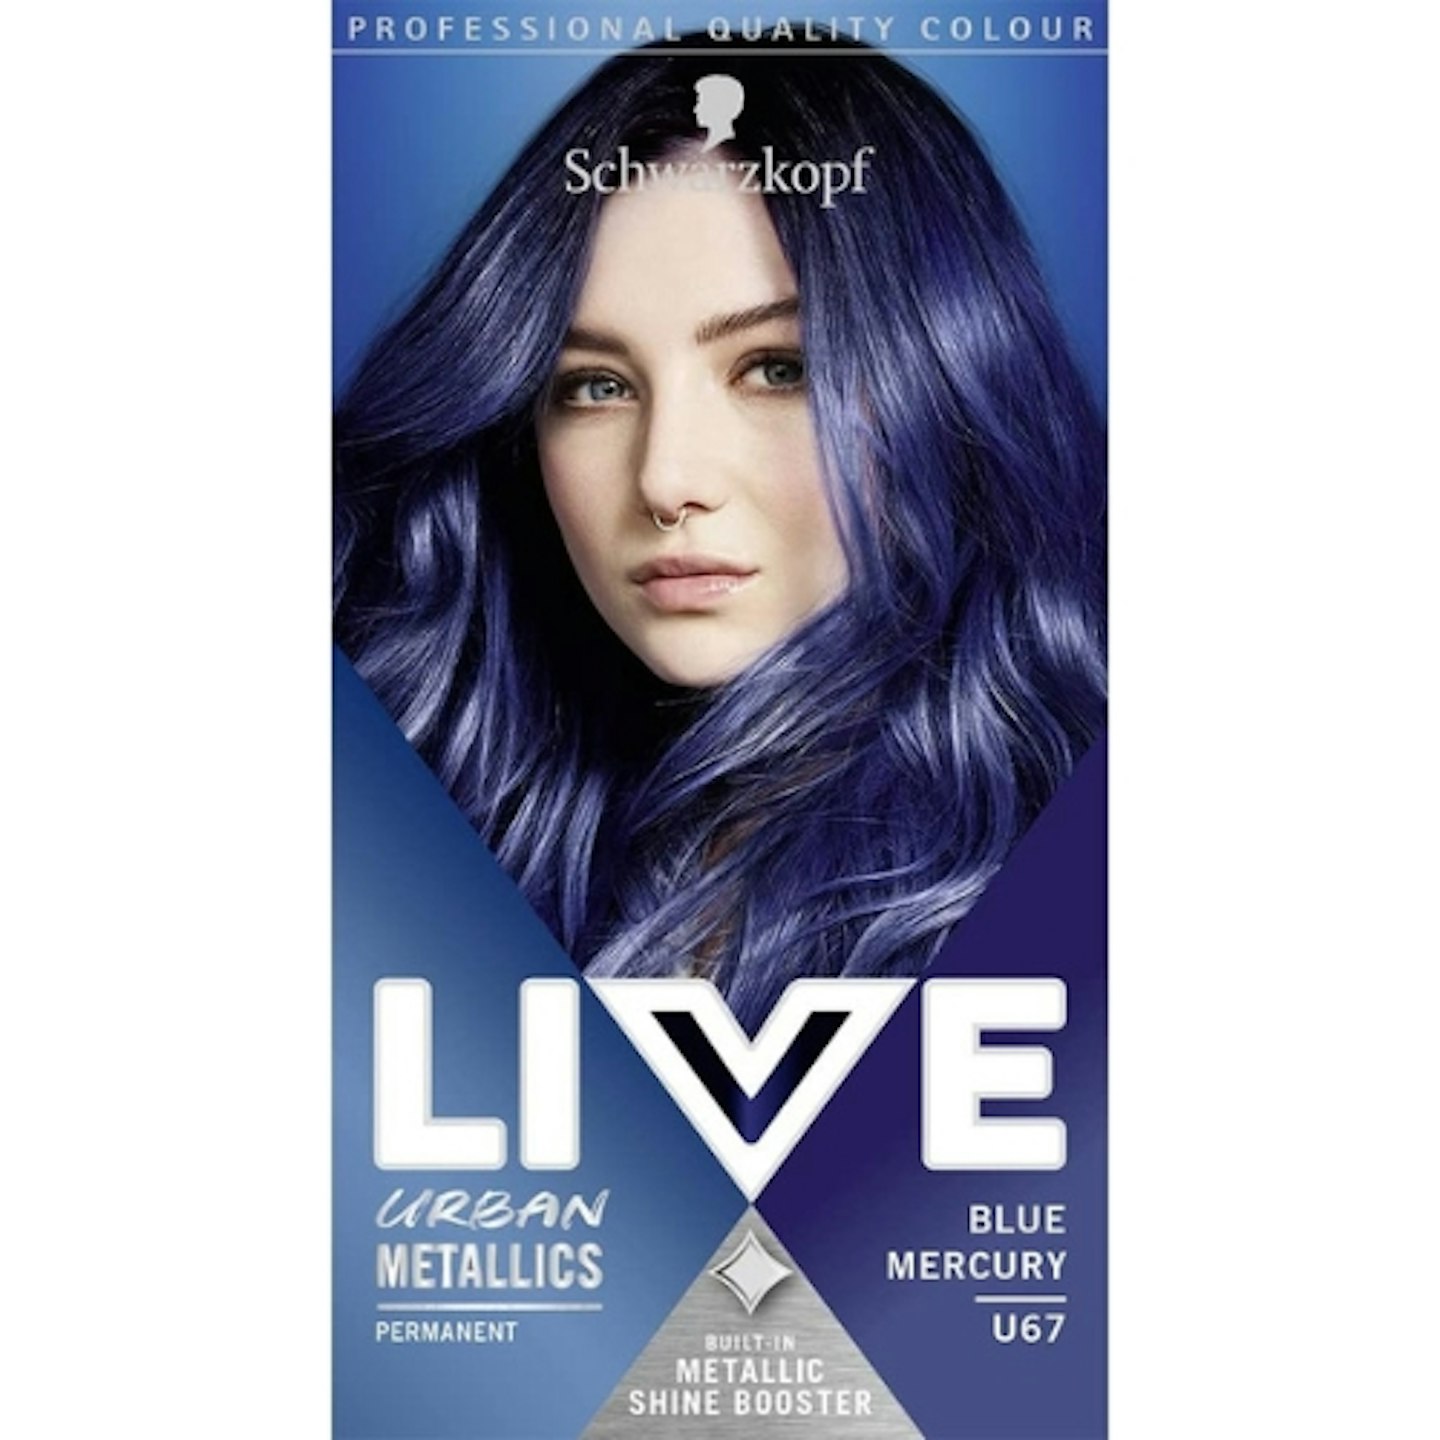 Schwarzkopf LIVE Urban Metallic Vibrant Permanent Blue Hair Dye